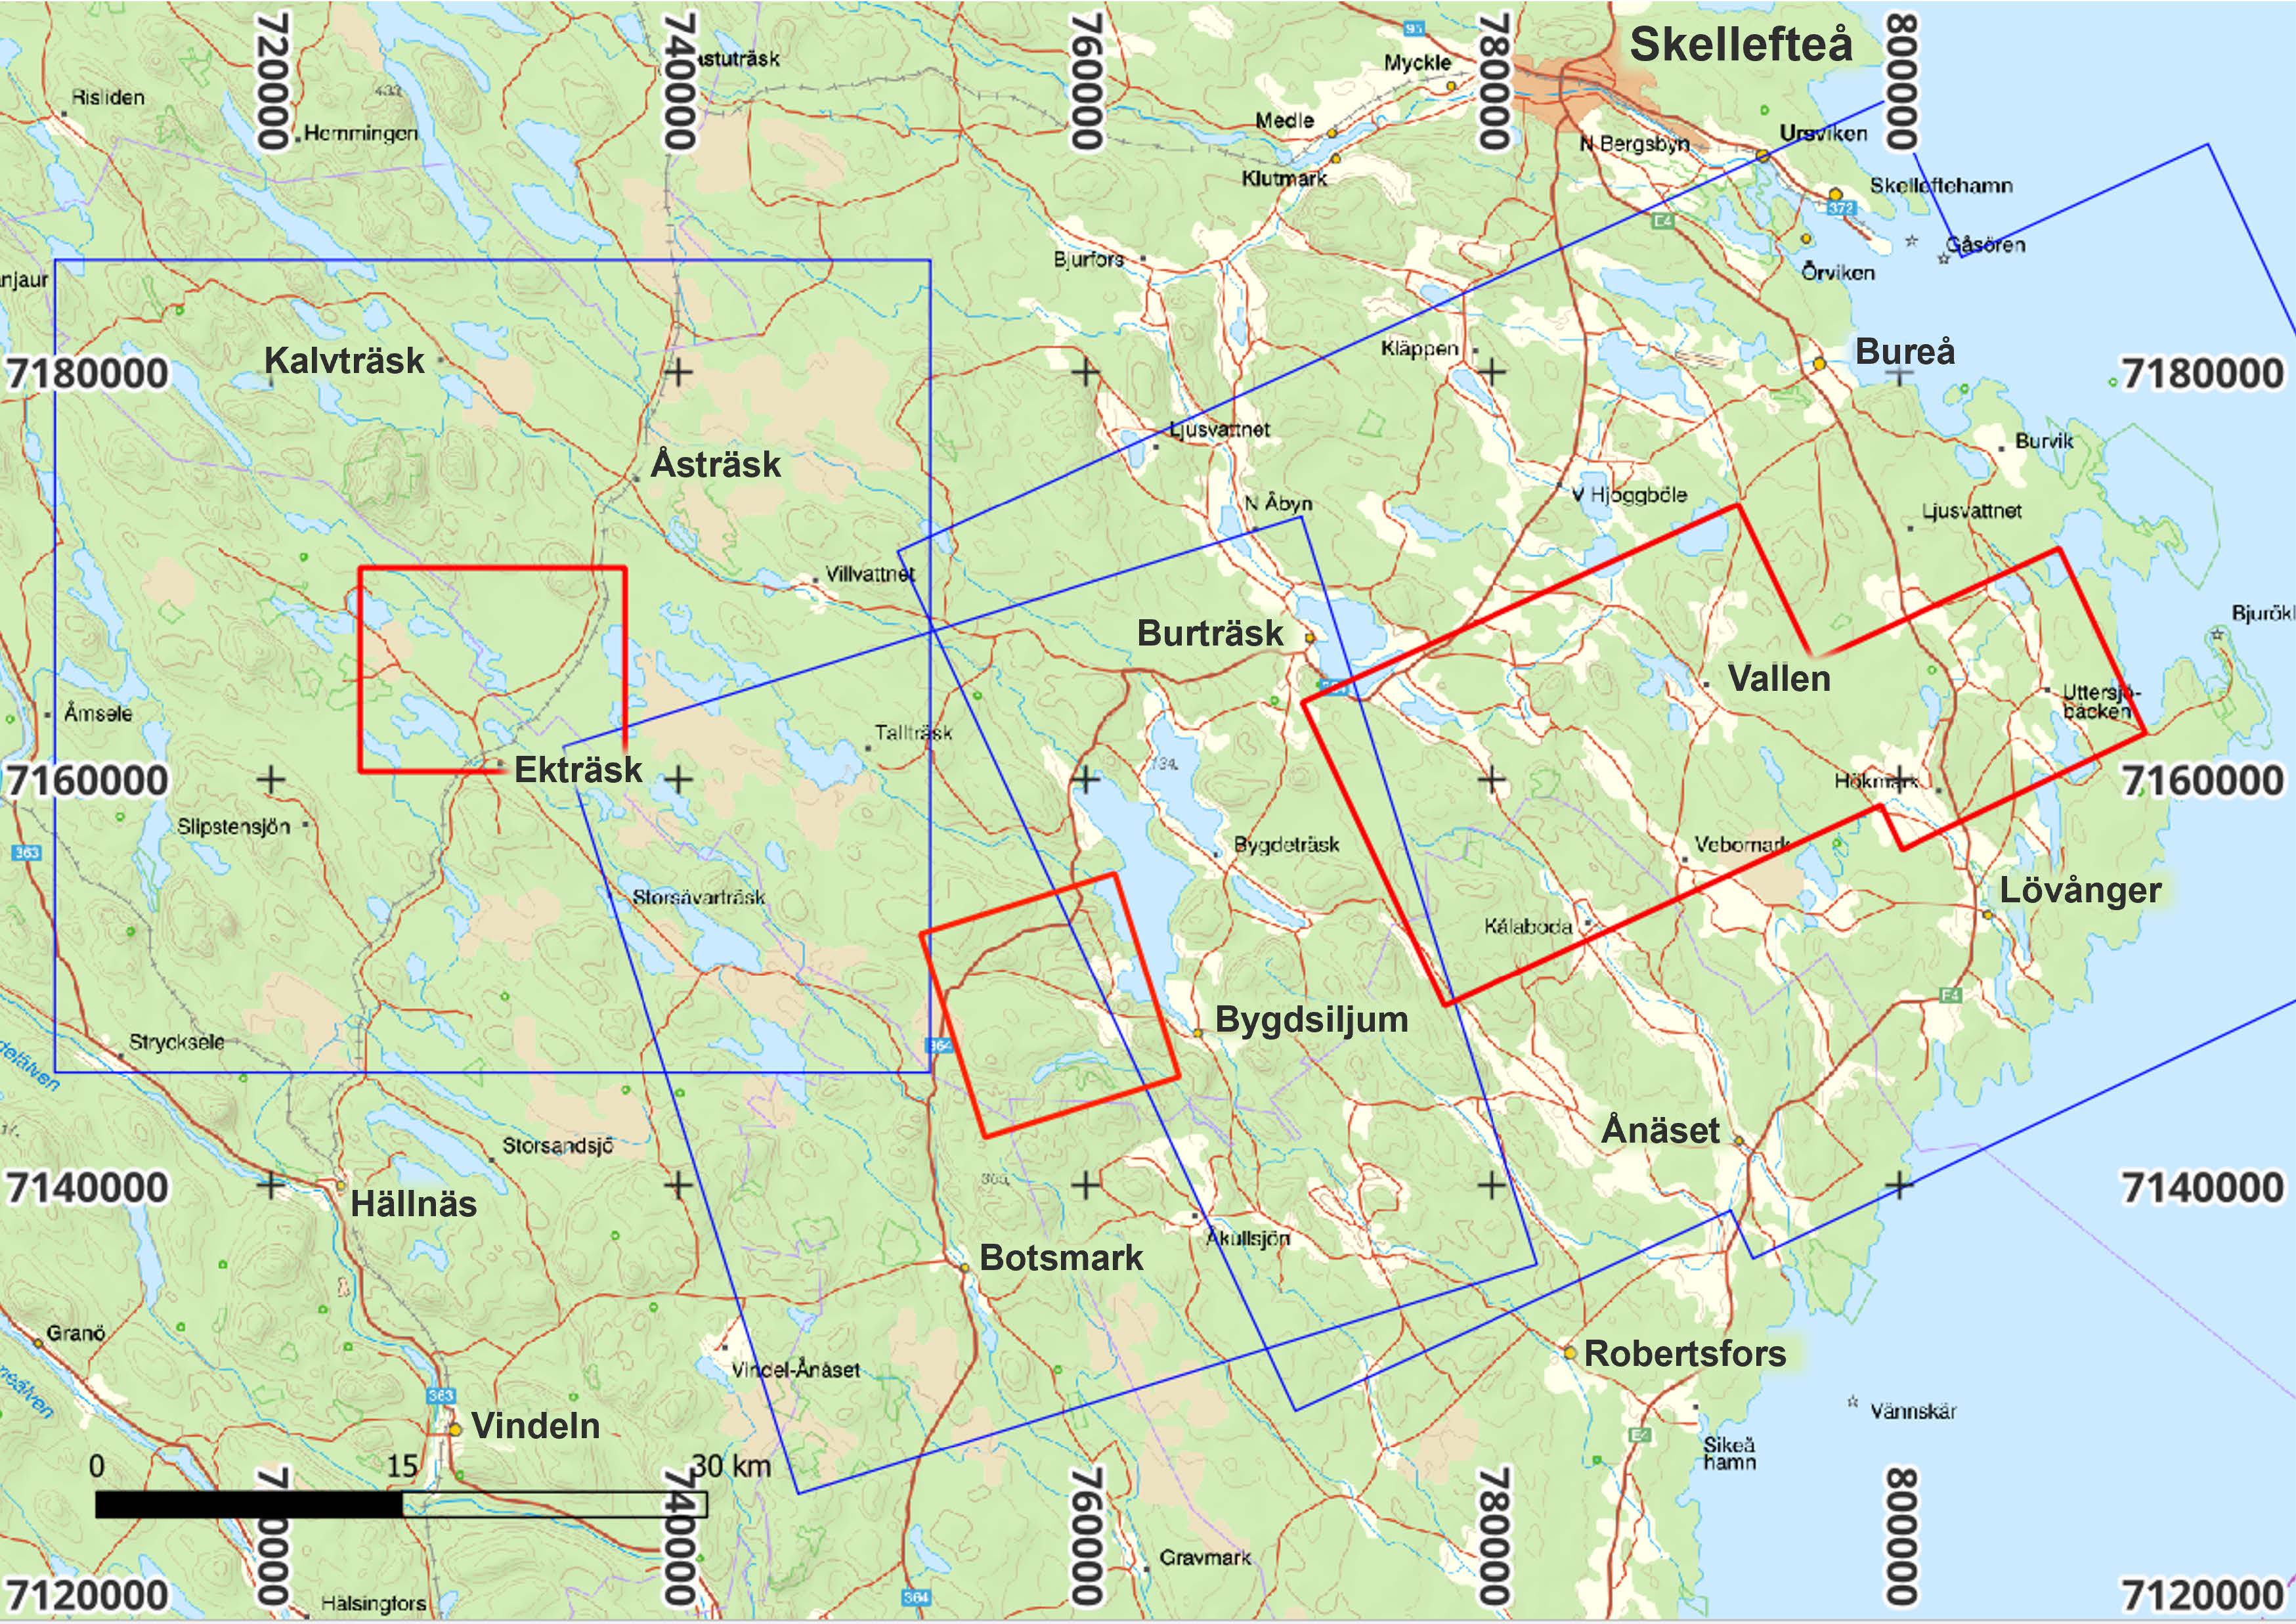 Kartbild över Västerbotten med markeringsrektanglar i rött och blått.